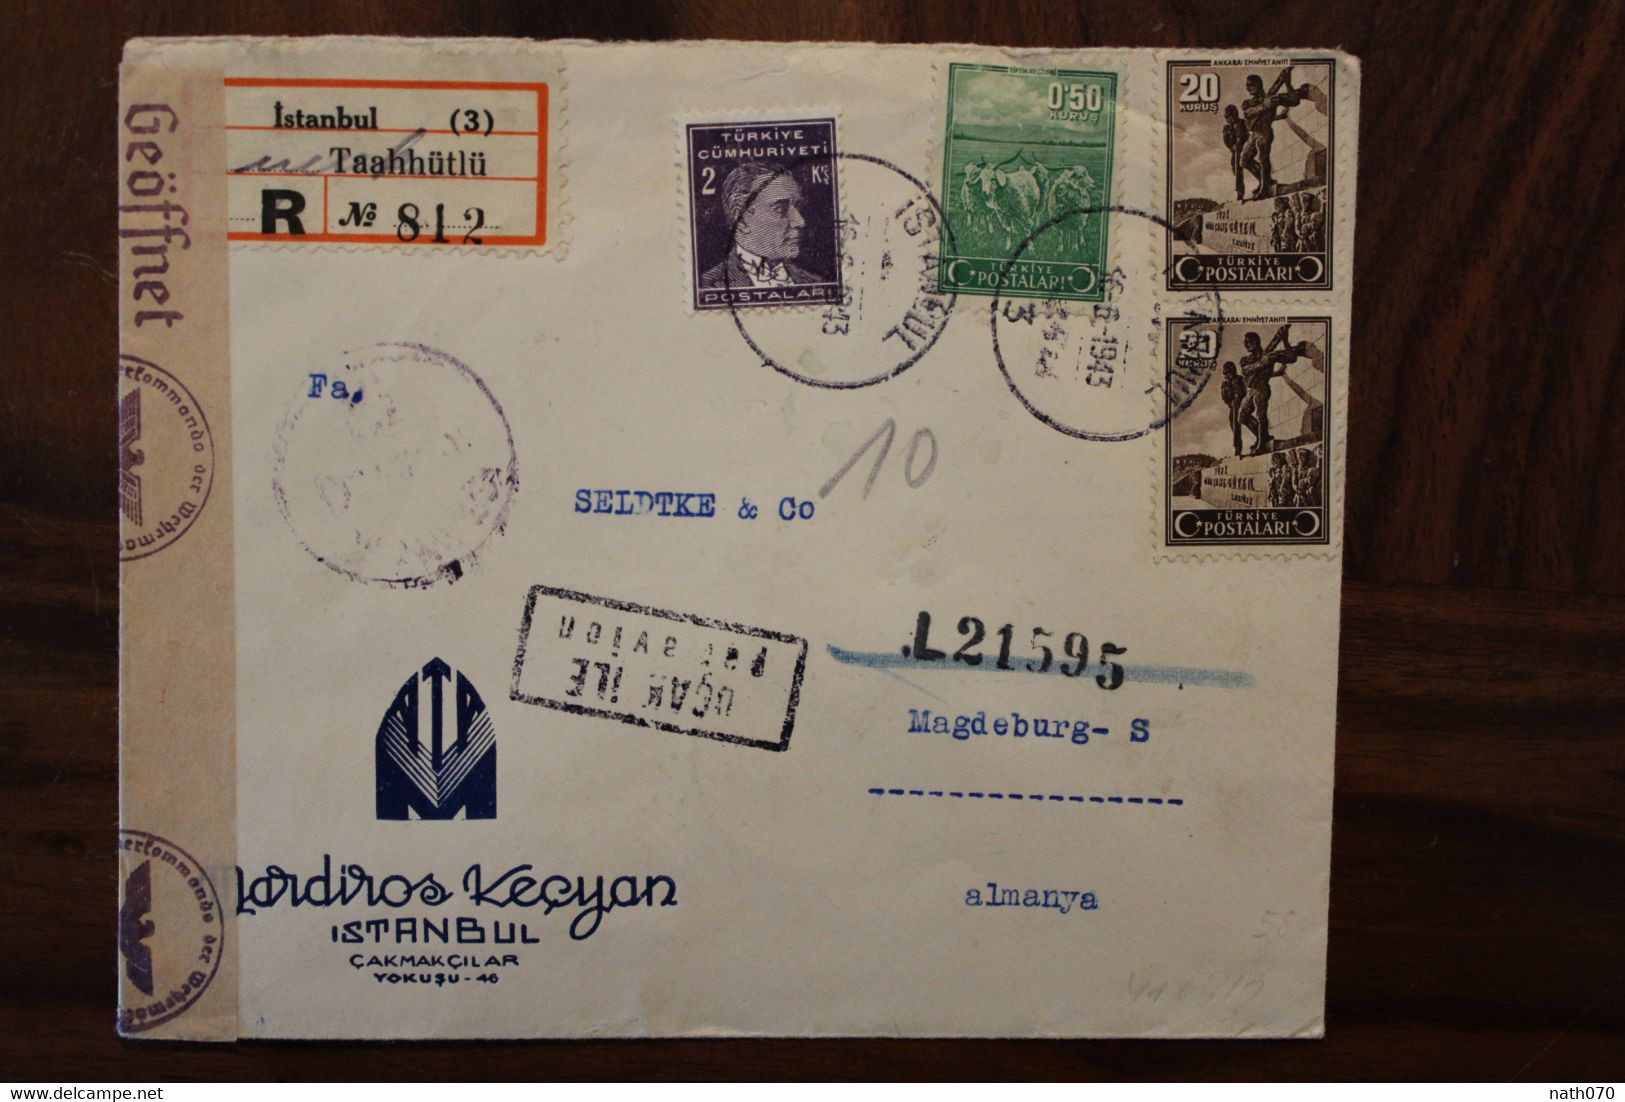 Turquie 1943 OKW Censure Türkei Air Mail Cover Enveloppe Paire Par Avion Allemagne Turkey Türkiye Ww2 Wk2 - Cartas & Documentos